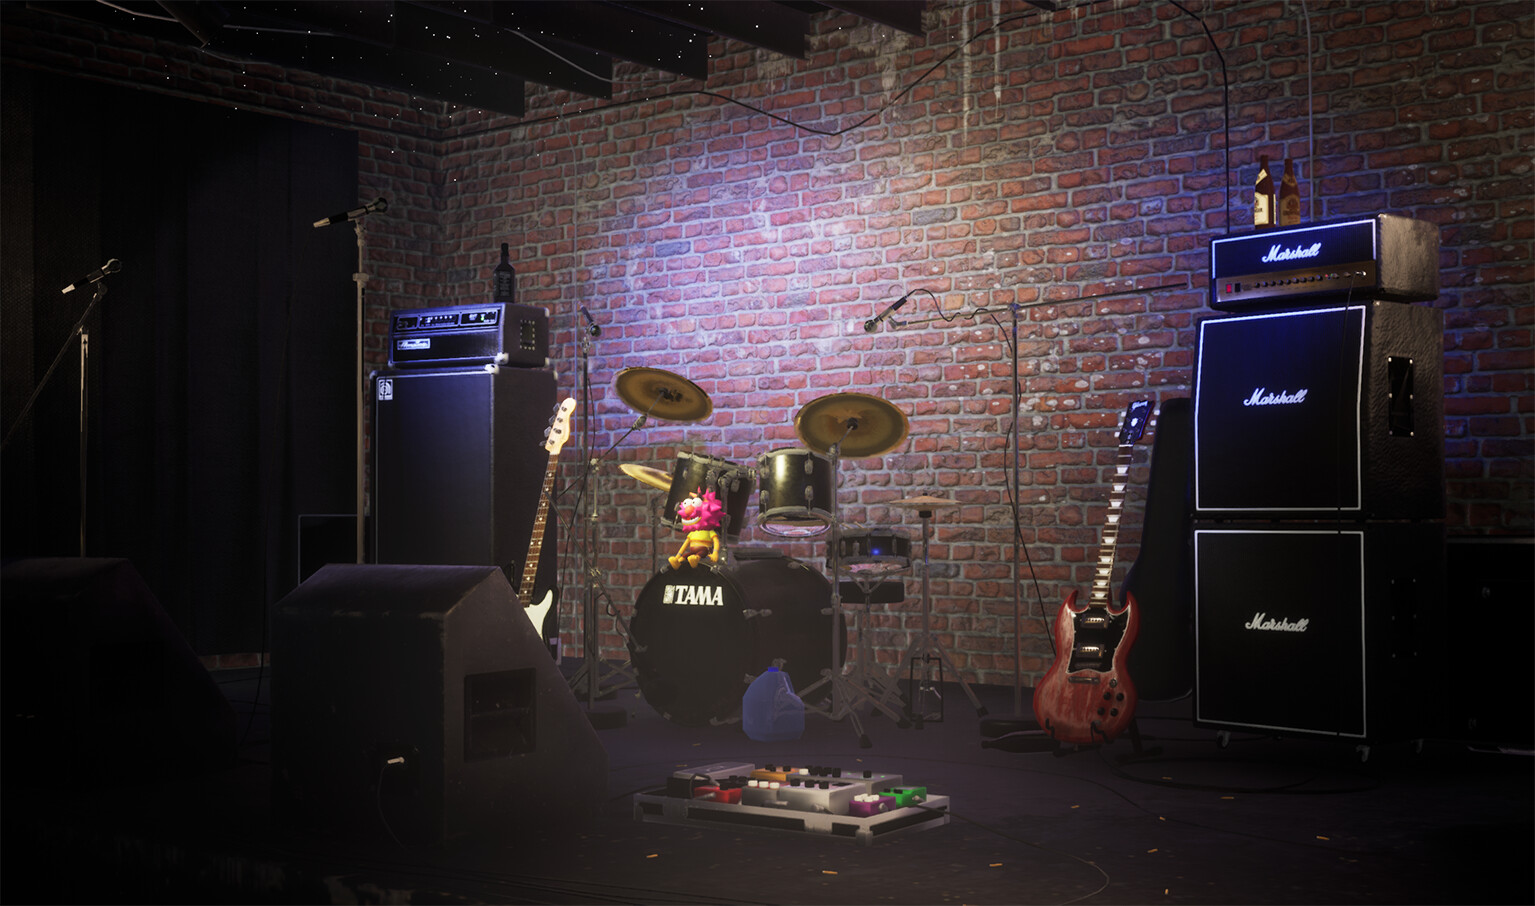 rock stage backdrop